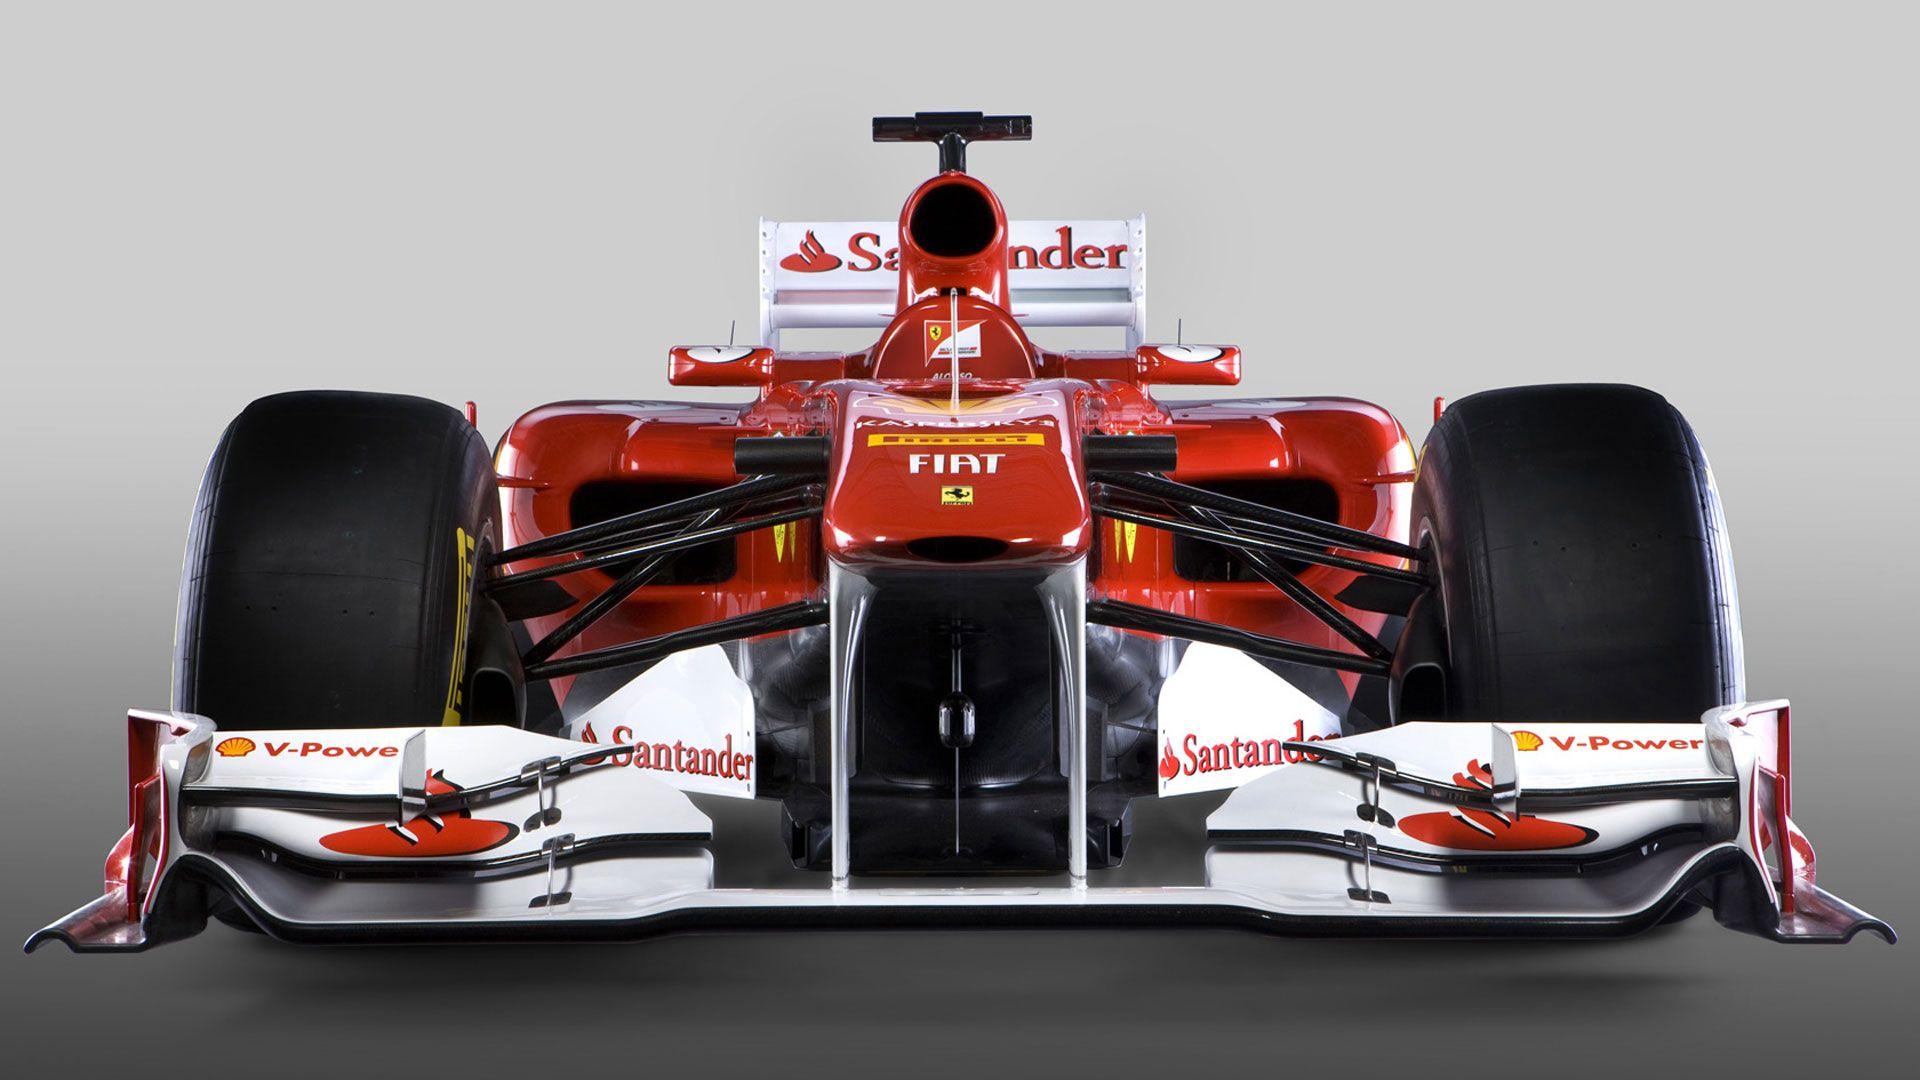 Sports F1 Wallpaper. F1. Ferrari, Ferrari f Cars